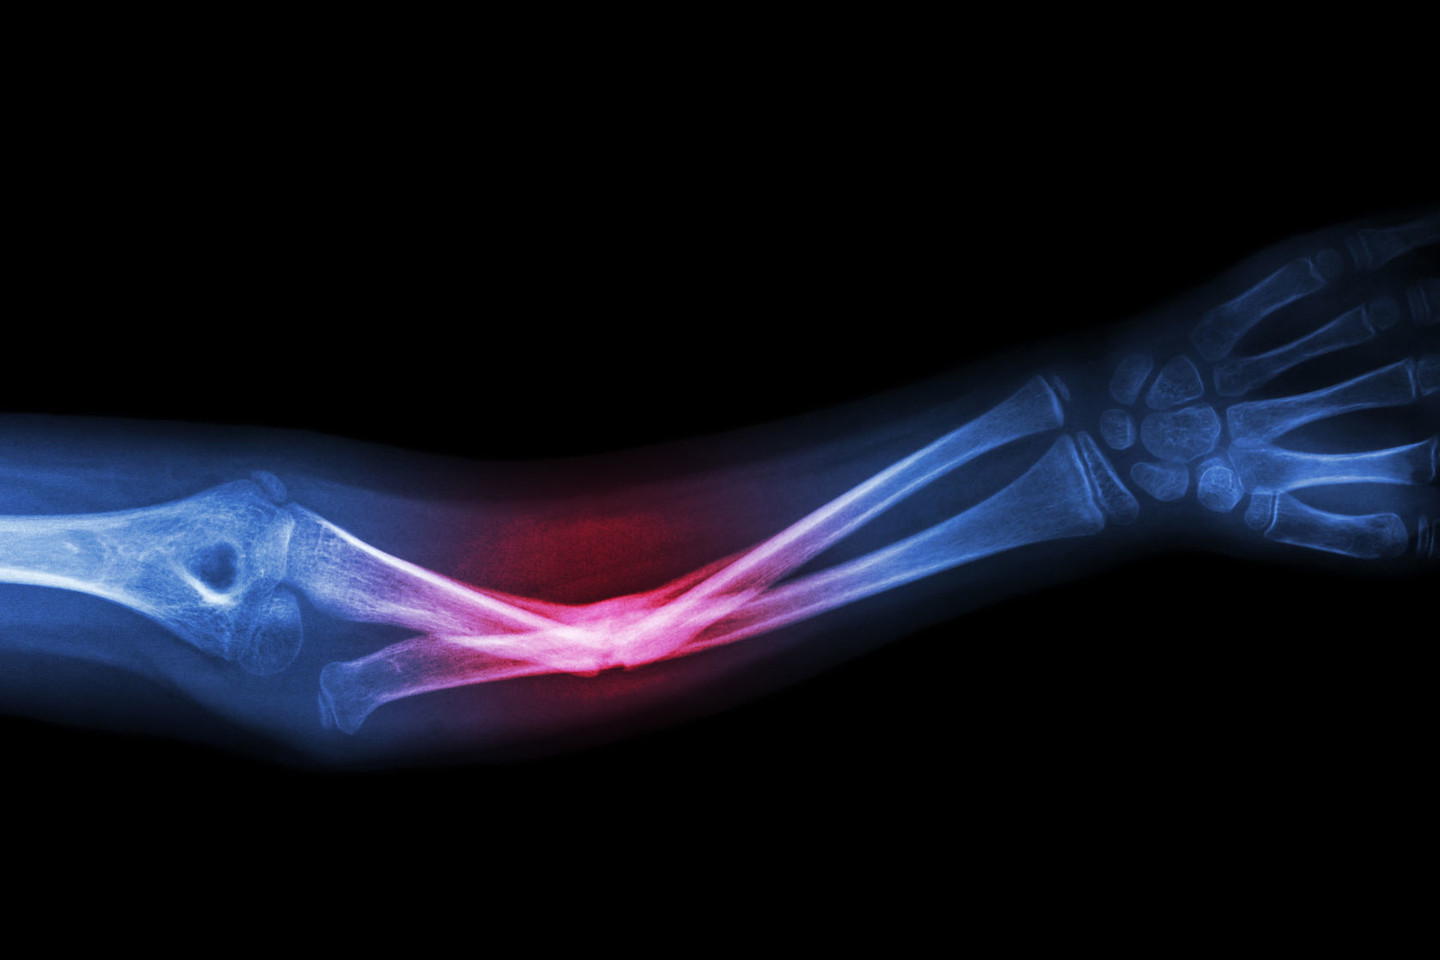  Sergant osteoporoze stipriai padidėja kaulų lūžių rizika.<br> 123rf.com asociatyvi nuotr.